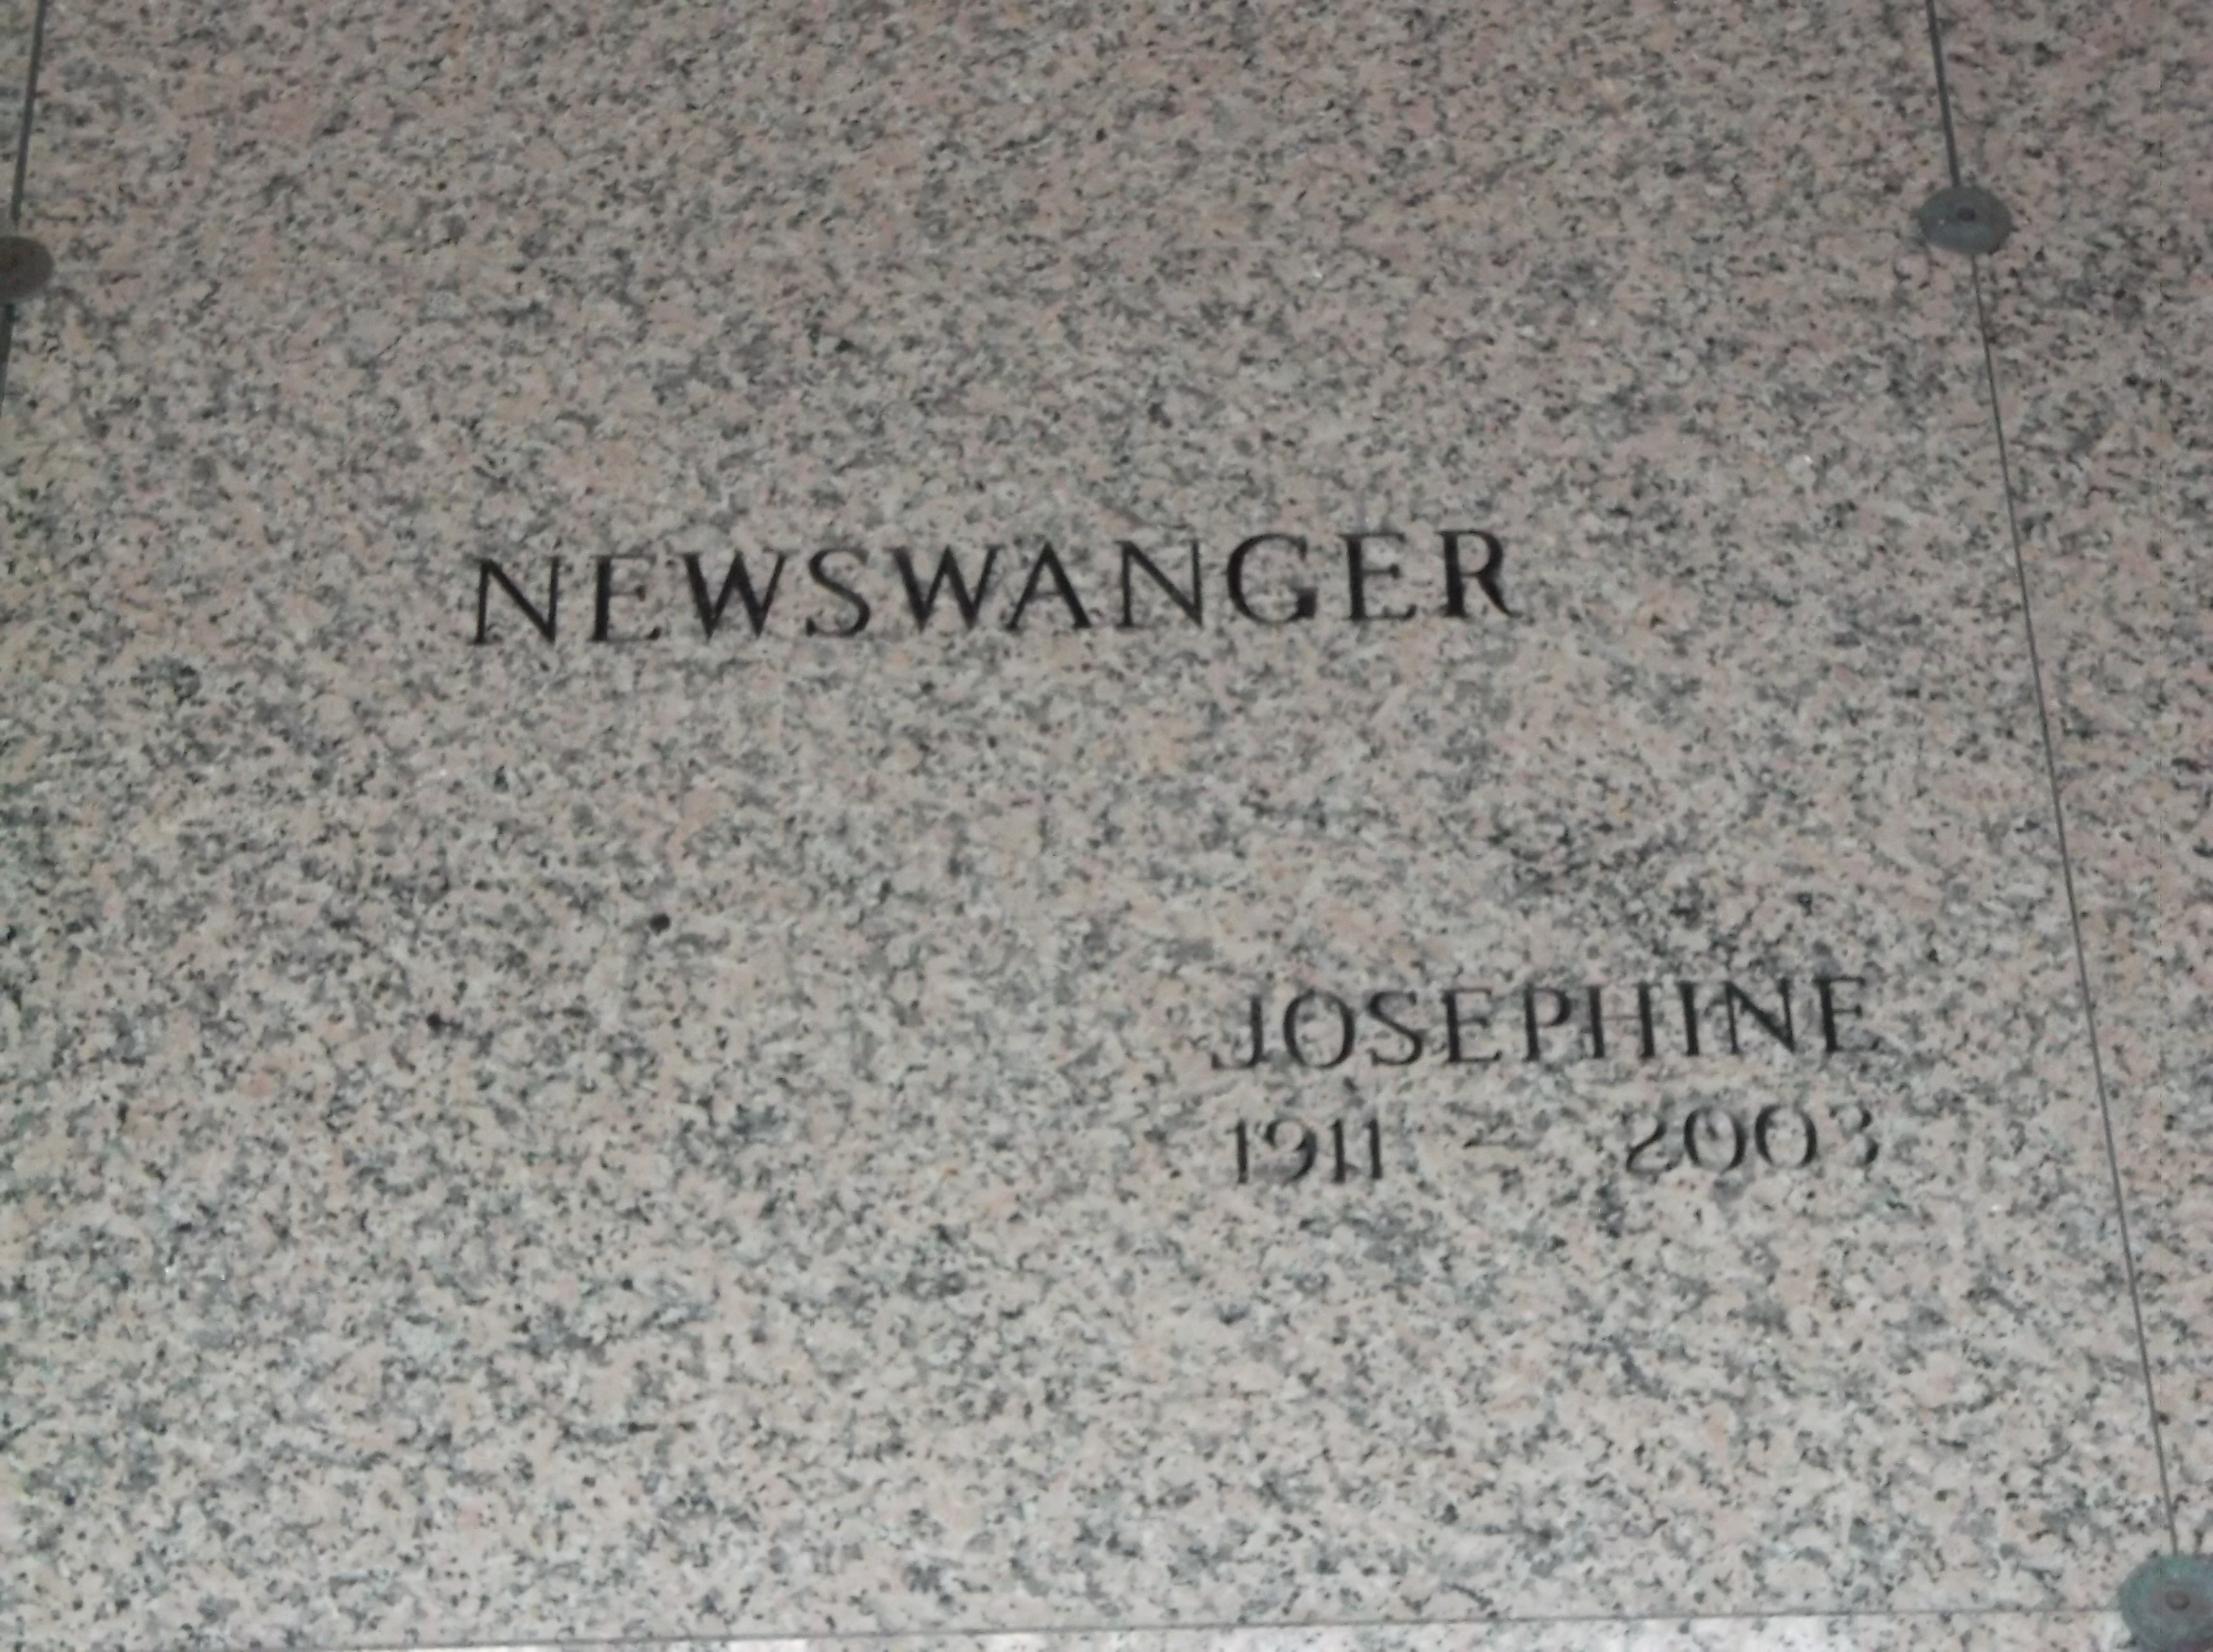 Josephine Newswanger